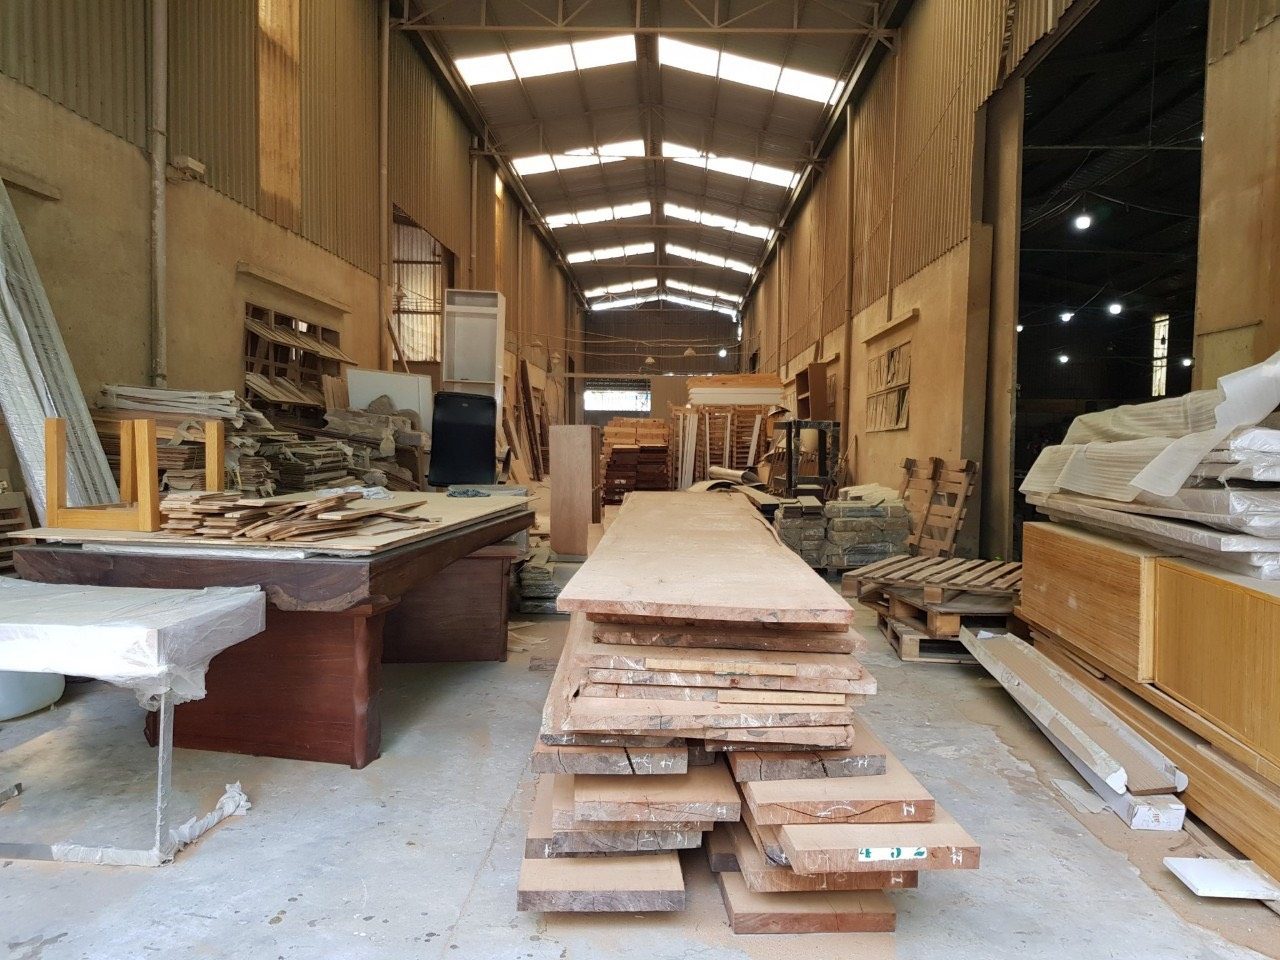 Xưởng sản xuất nội thất gỗ tự nhiên